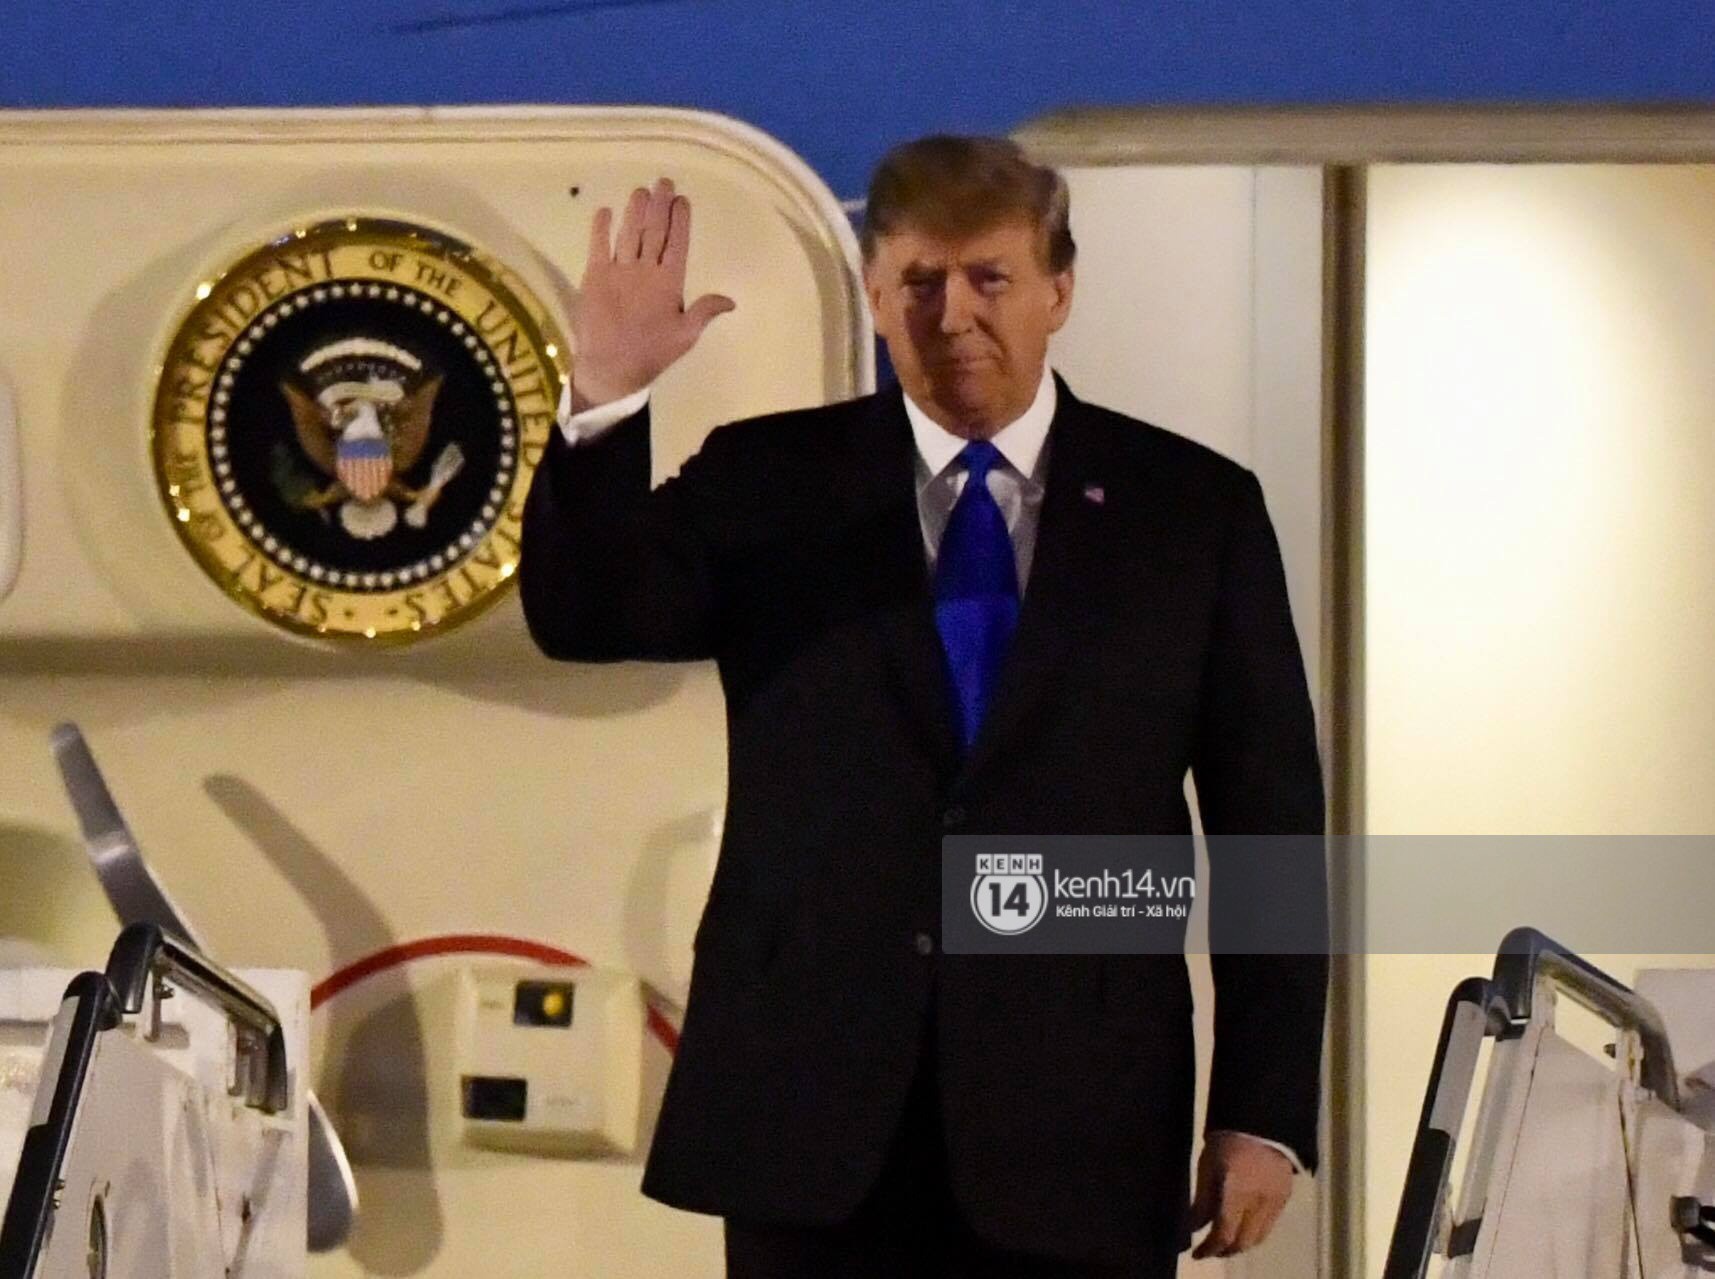 Tổng thống Mỹ Donald Trump xuống chuyên cơ, đang trên siêu xe quái thú vào trung tâm Hà Nội - Ảnh 3.